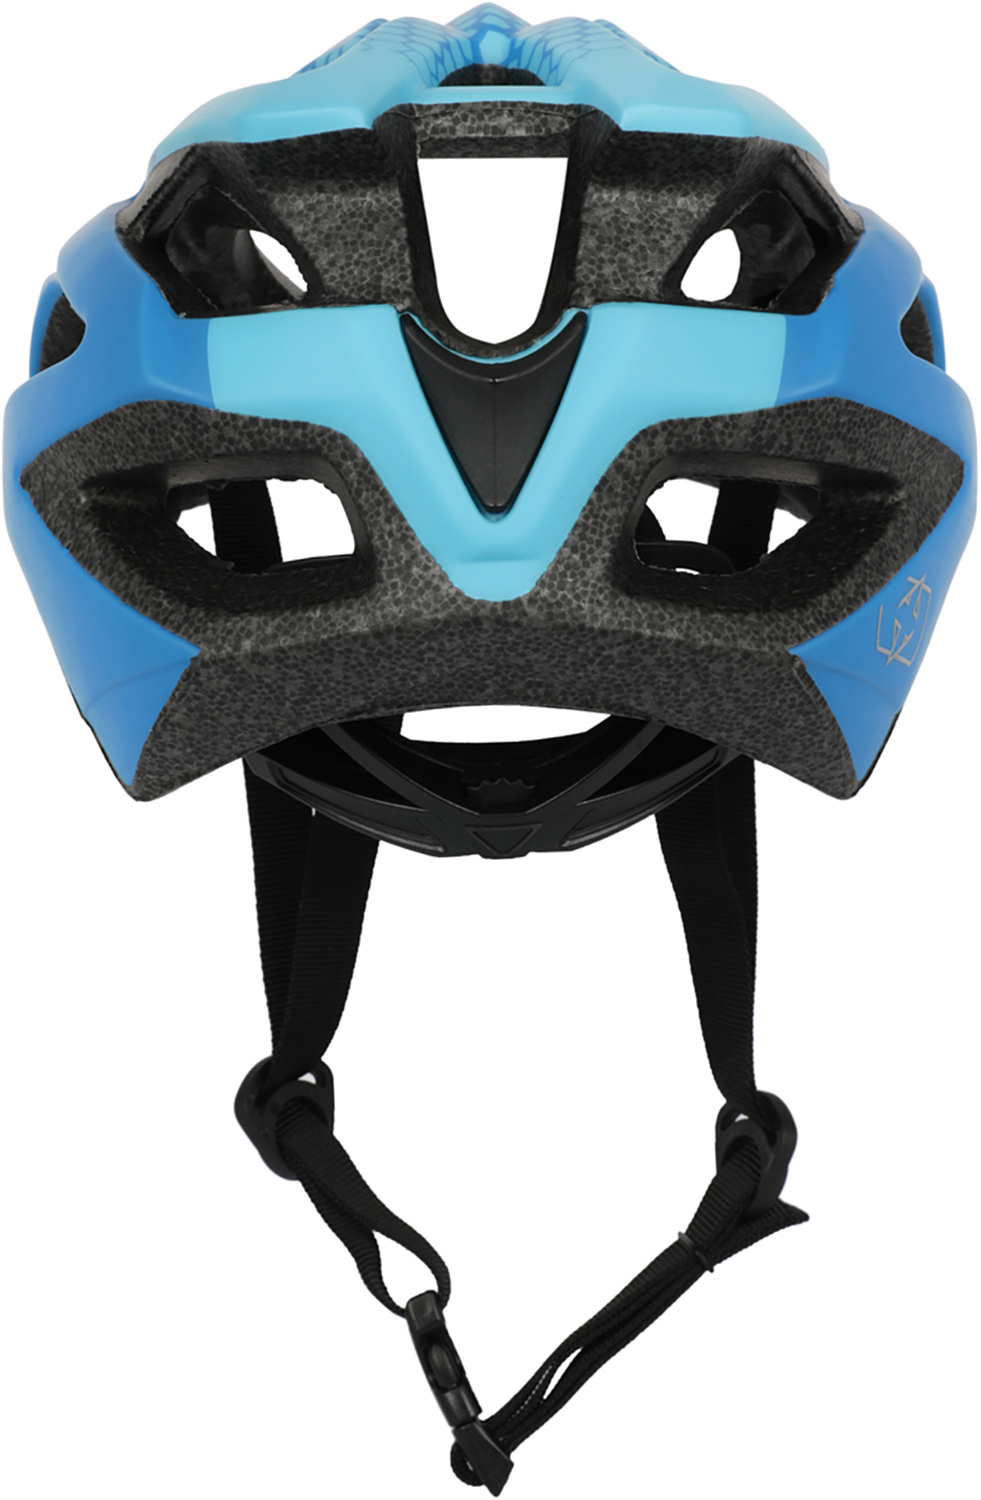 Велошлем Oxford Spectre Helmet Matt Blue